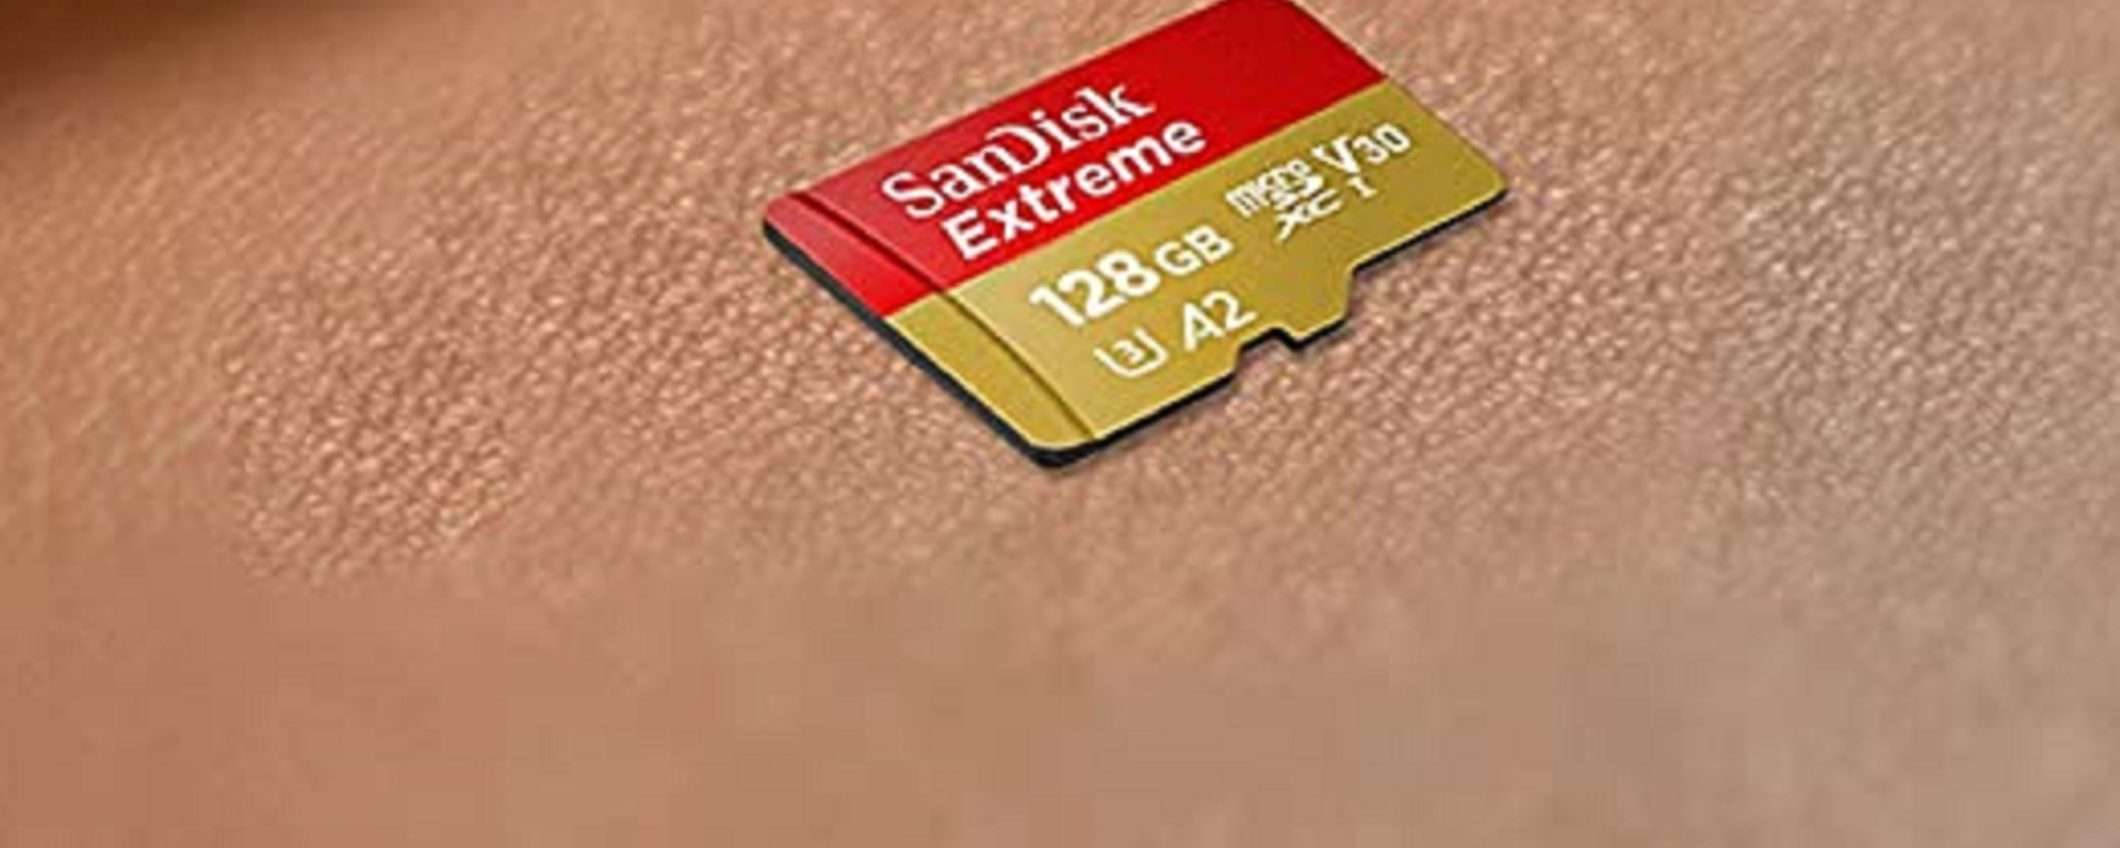 SanDisk Extreme microSDXC da 128GB: ottimo prezzo su Amazon!